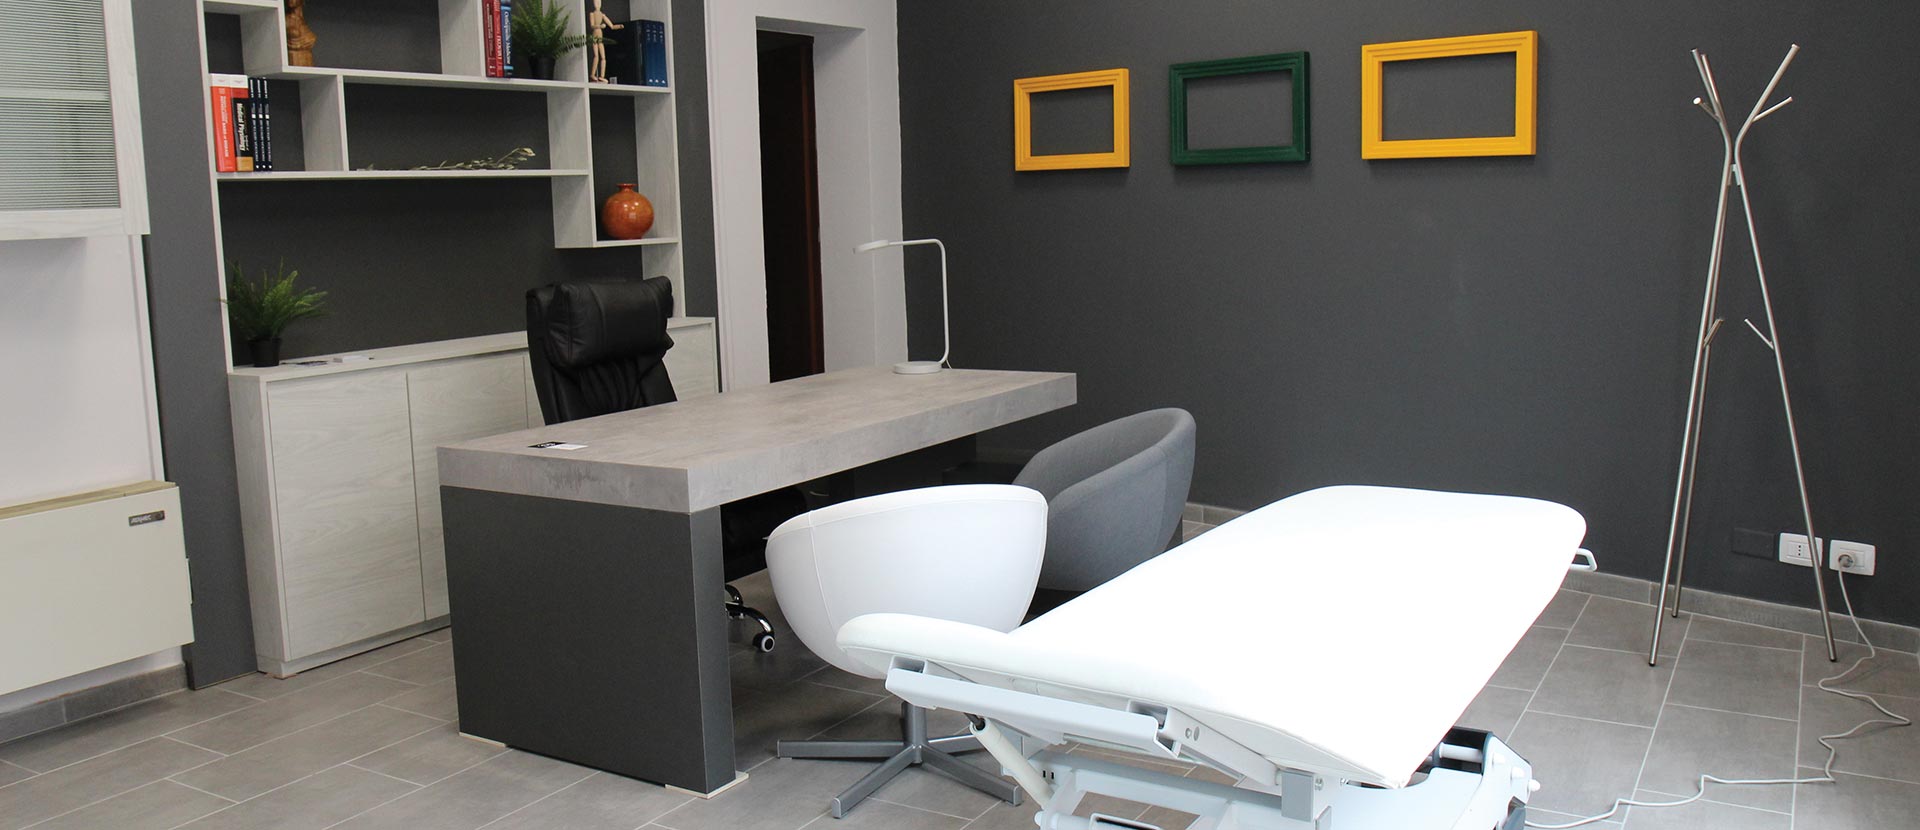 Studio Alphaomega | Fisioterapia Osteopatia Counseling Modena